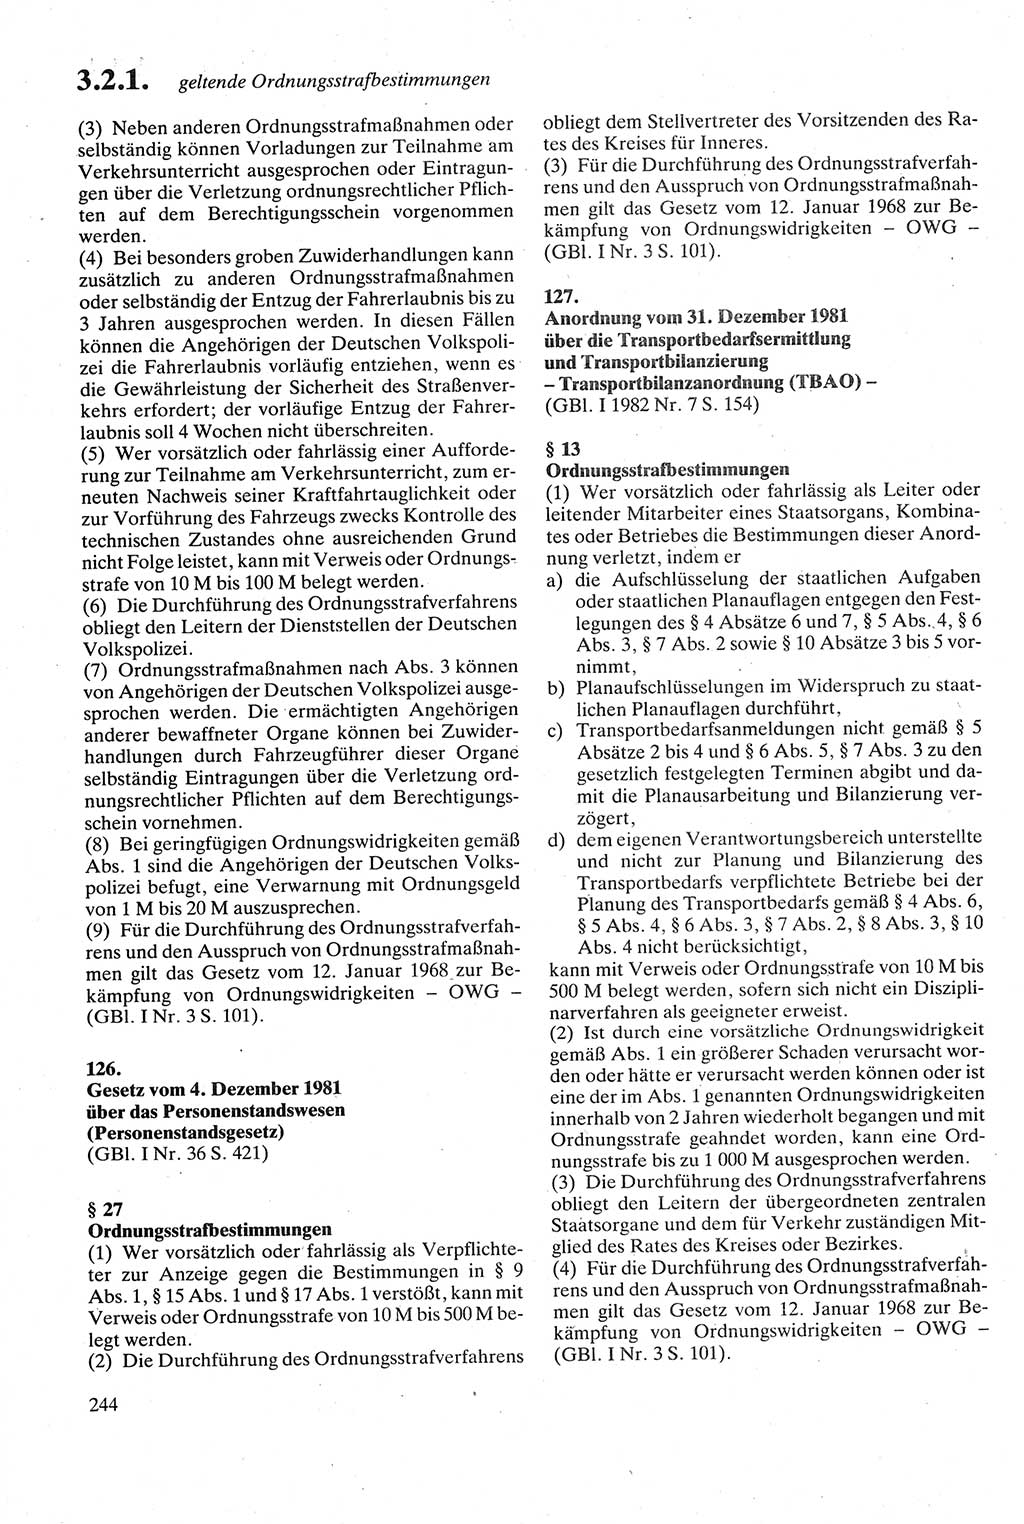 Strafgesetzbuch (StGB) der Deutschen Demokratischen Republik (DDR) sowie angrenzende Gesetze und Bestimmungen 1979, Seite 244 (StGB DDR Ges. Best. 1979, S. 244)